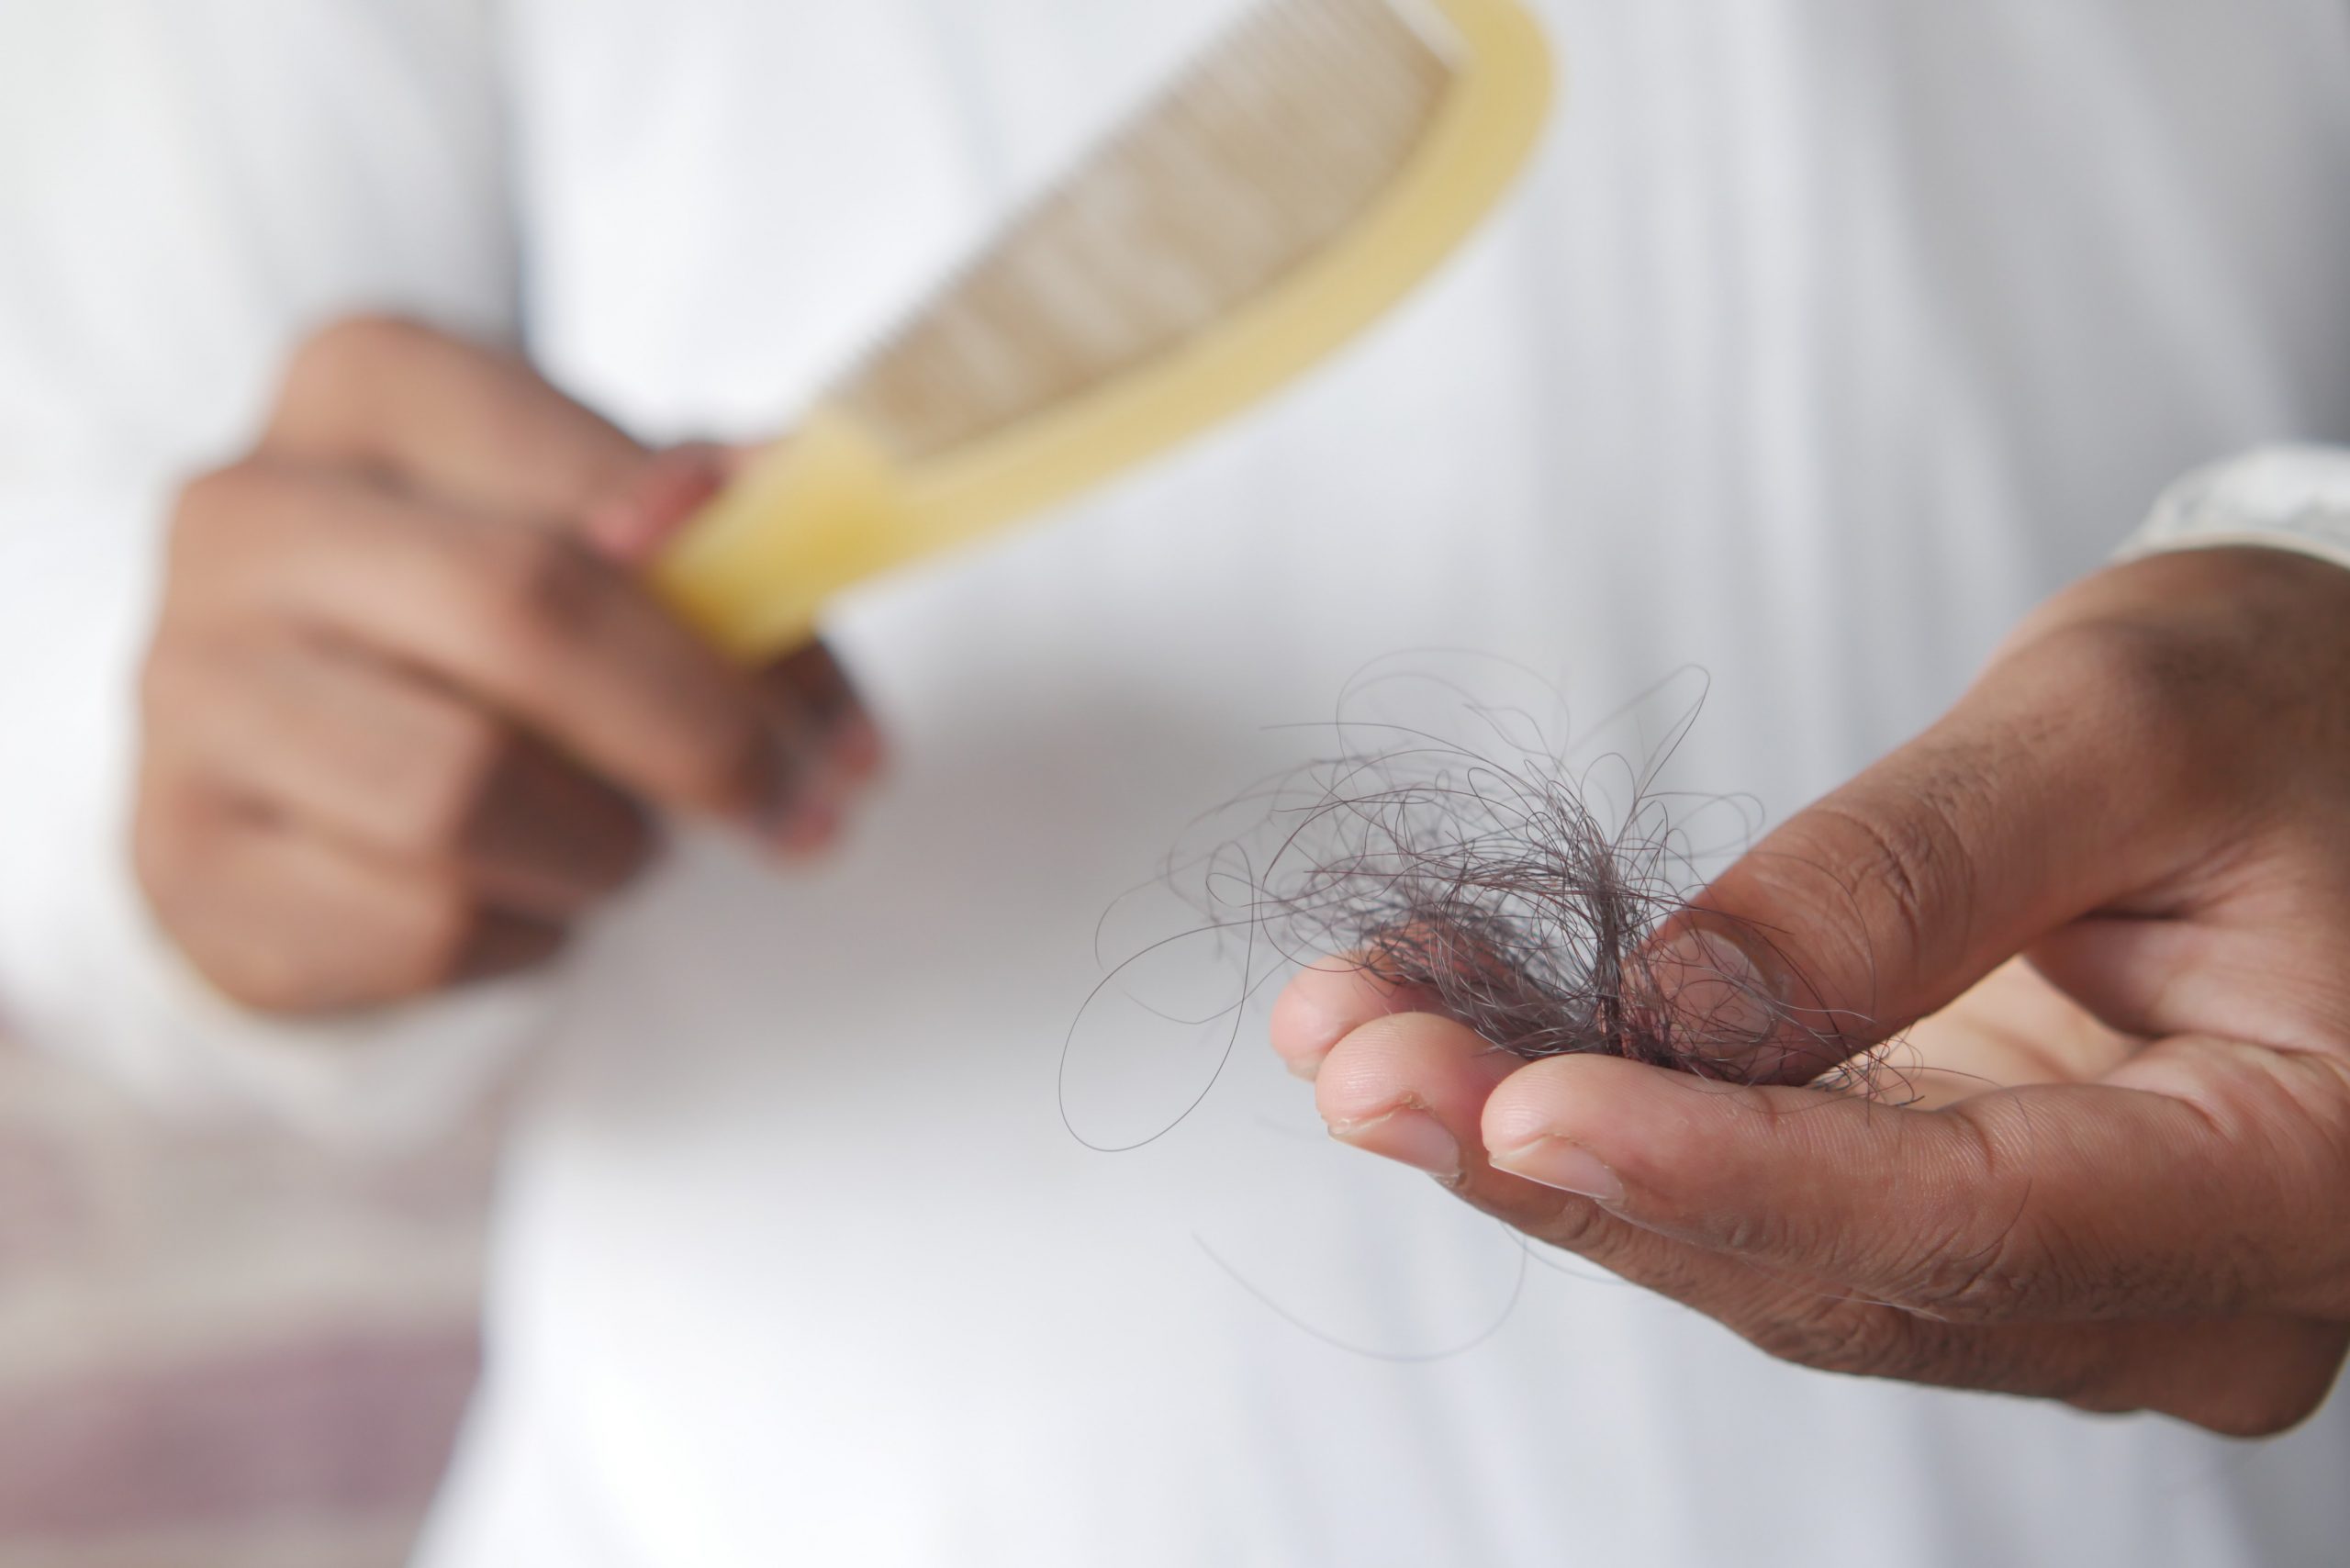 Imagen de un peine con cabello femenino, que muestra el excesivo derramamiento de cabello asociado con la alopecia femenina